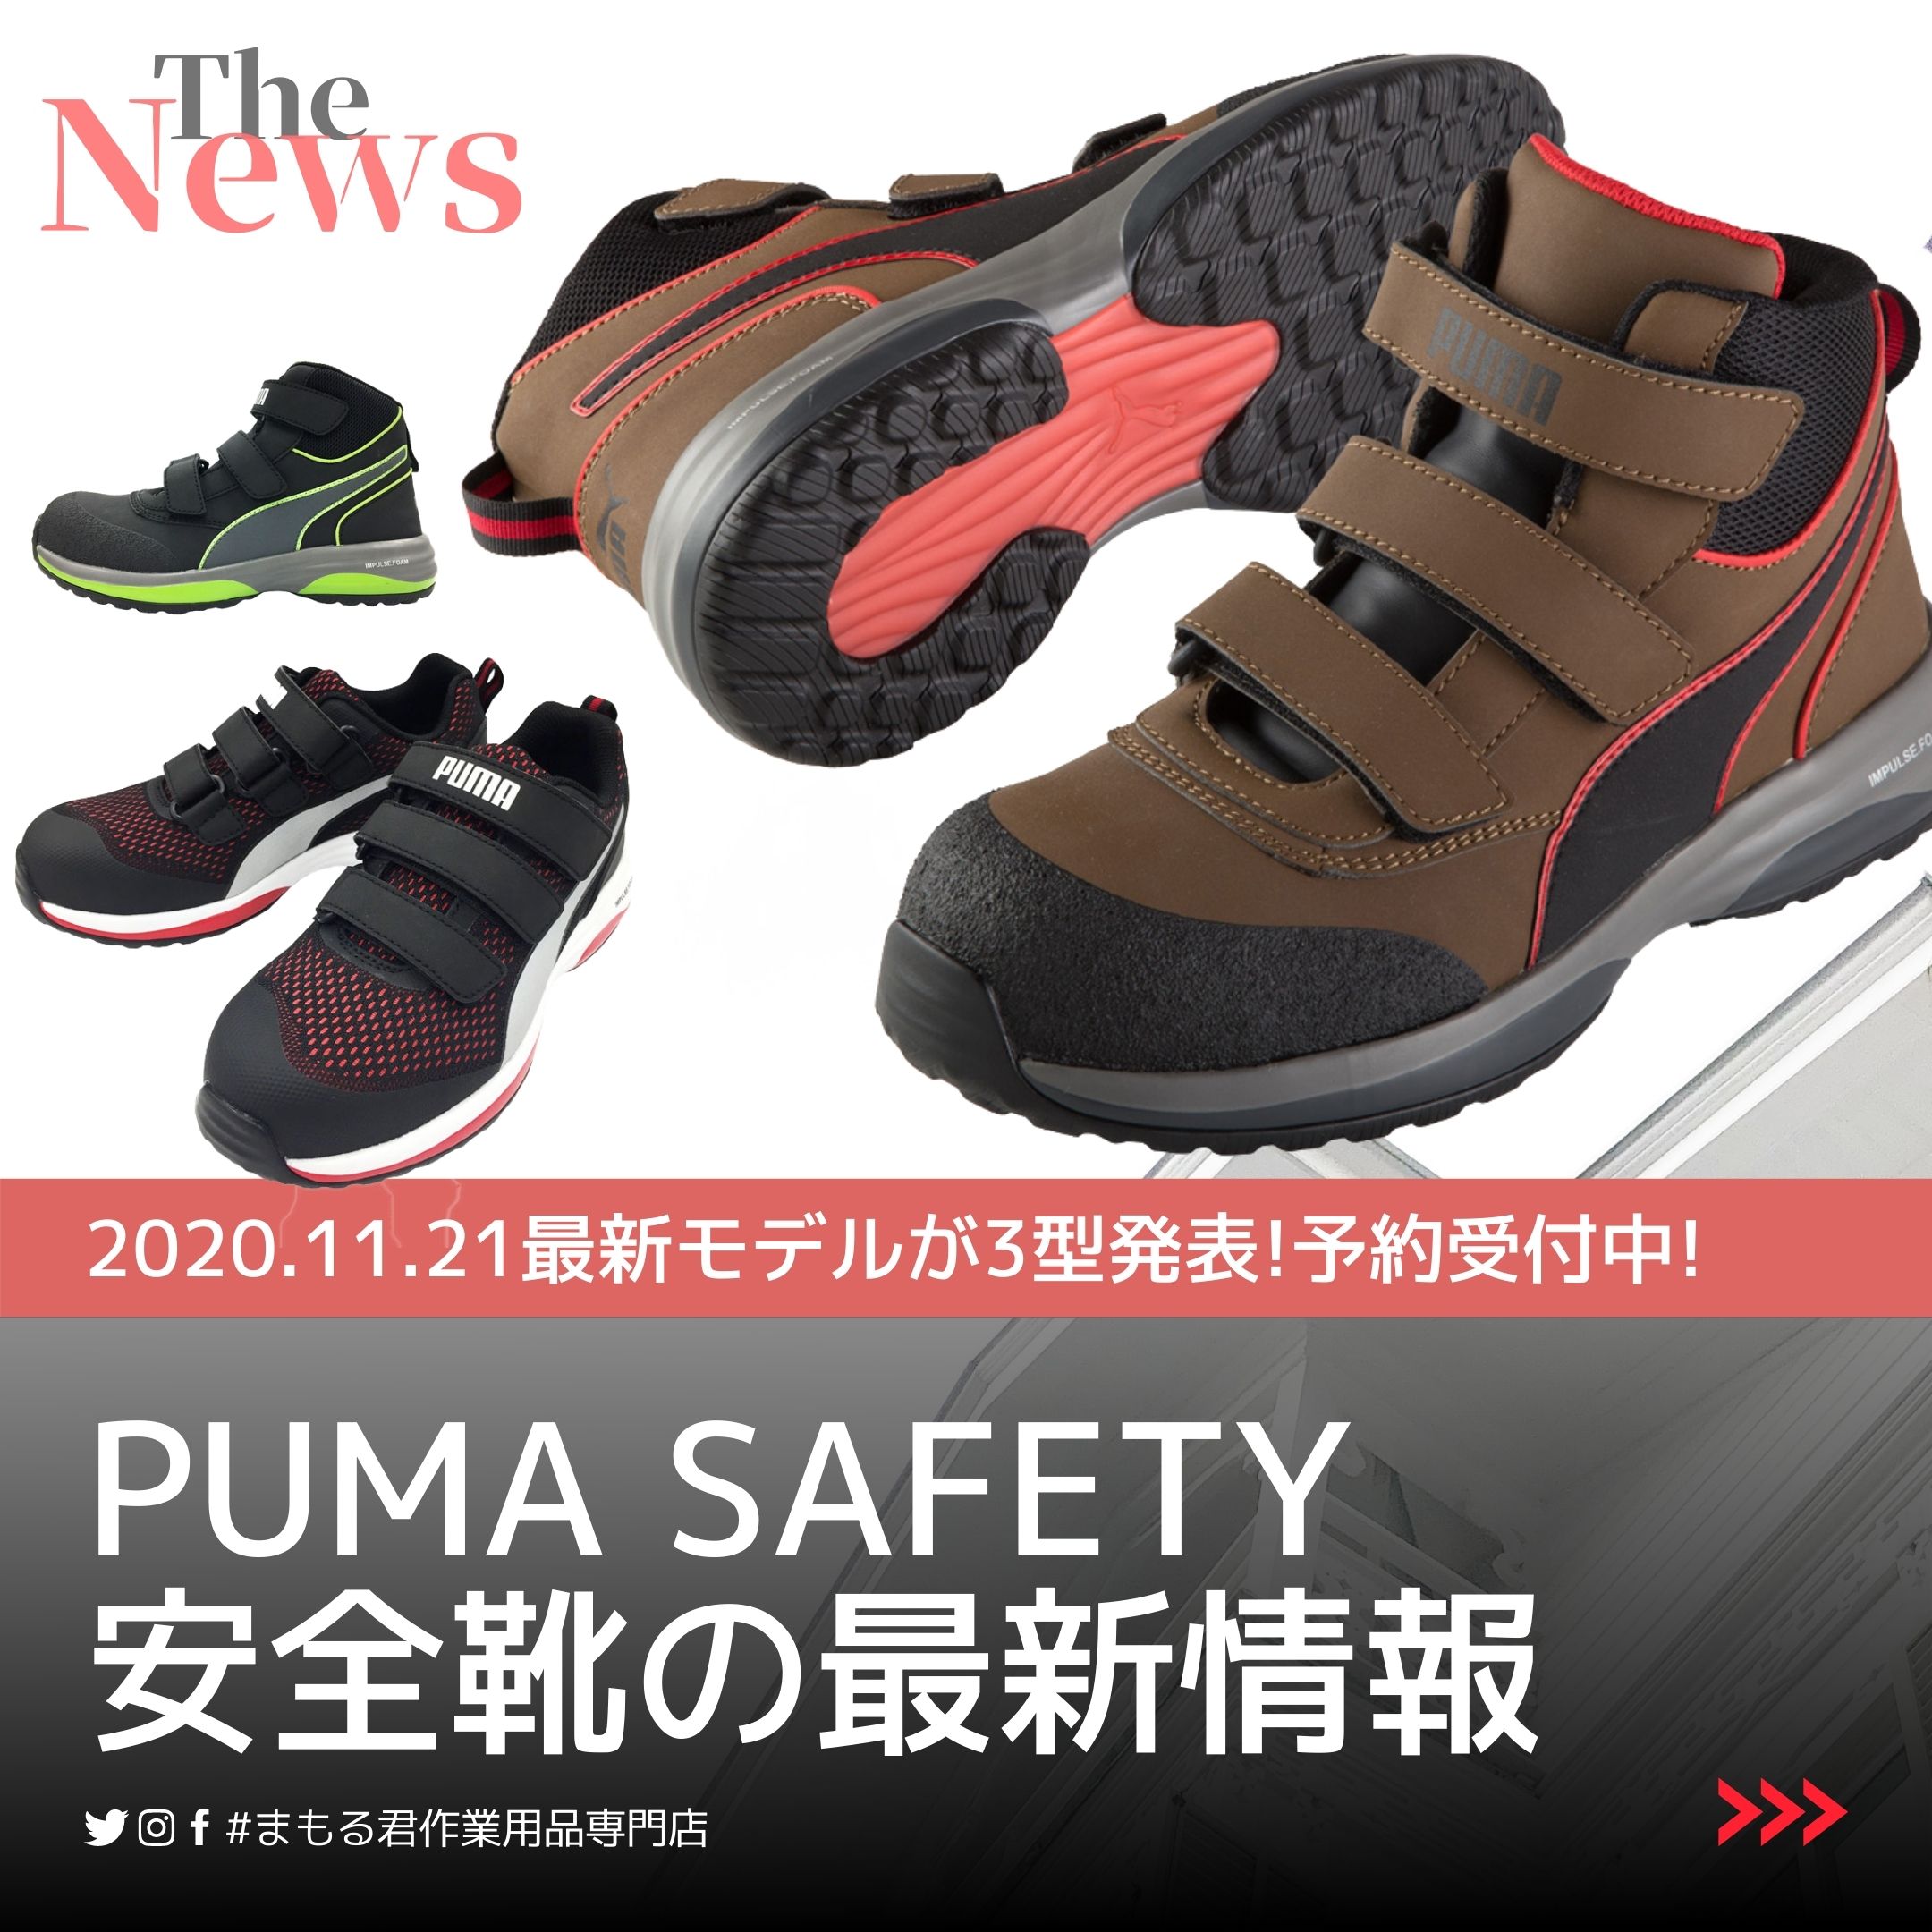 2022年版】プーマ 安全靴の限定モデル情報や定番モデルのご紹介!!